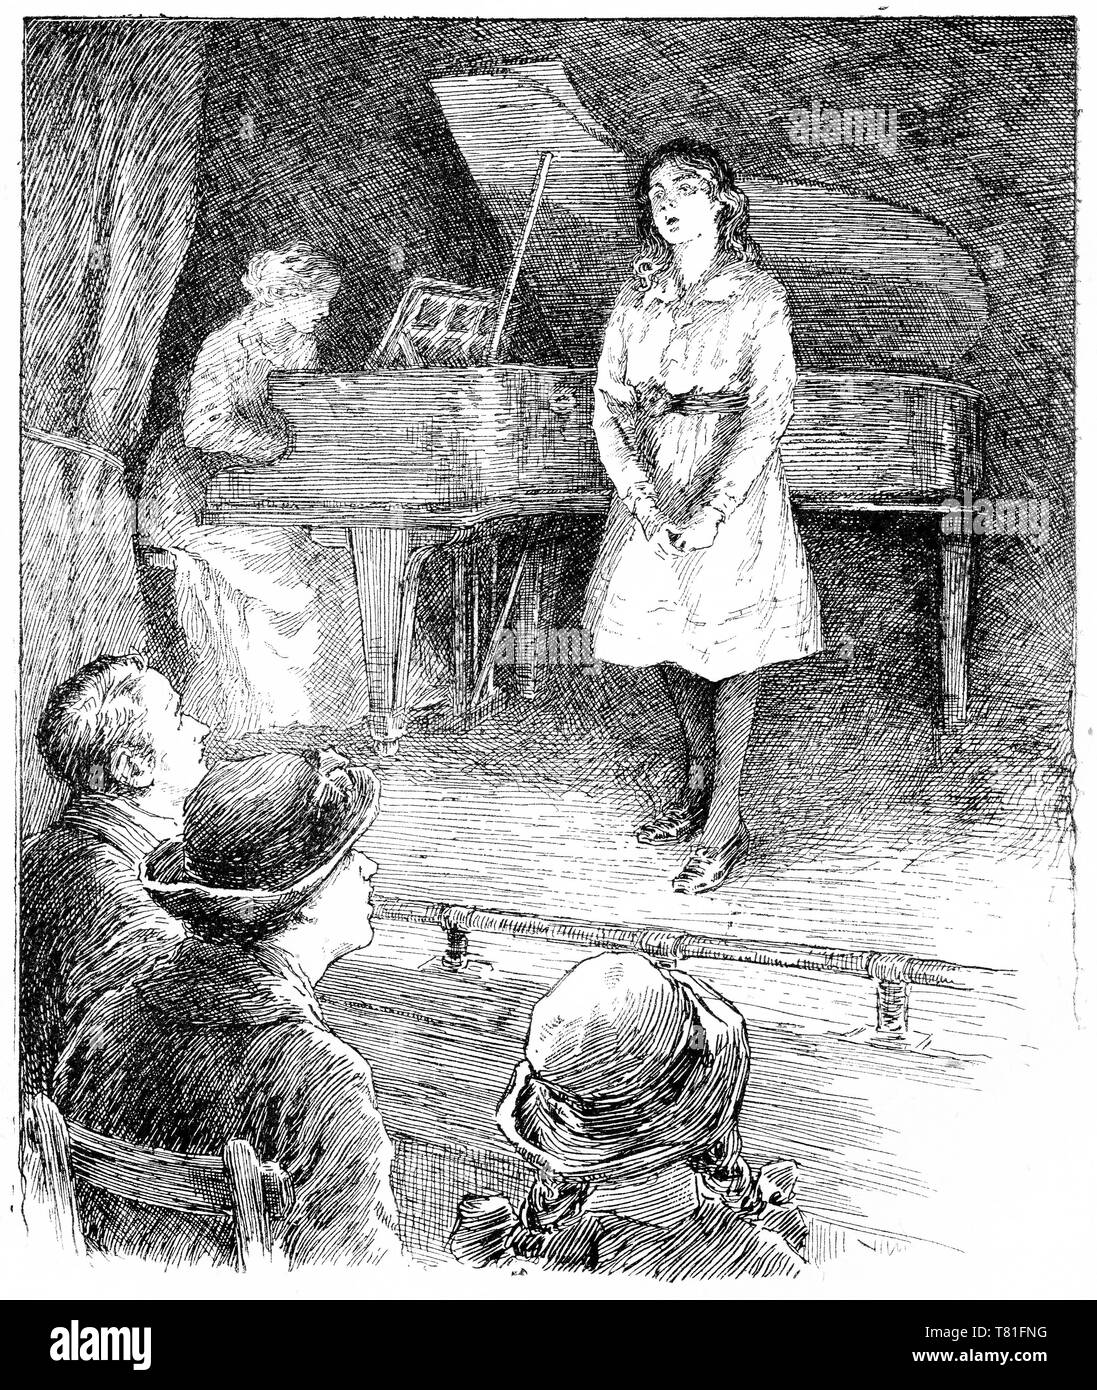 Gravure d'une fille chanter sur une scène devant un public, et probablement à un considérant de l'école. Chatterbox Magazine, 1917 Banque D'Images